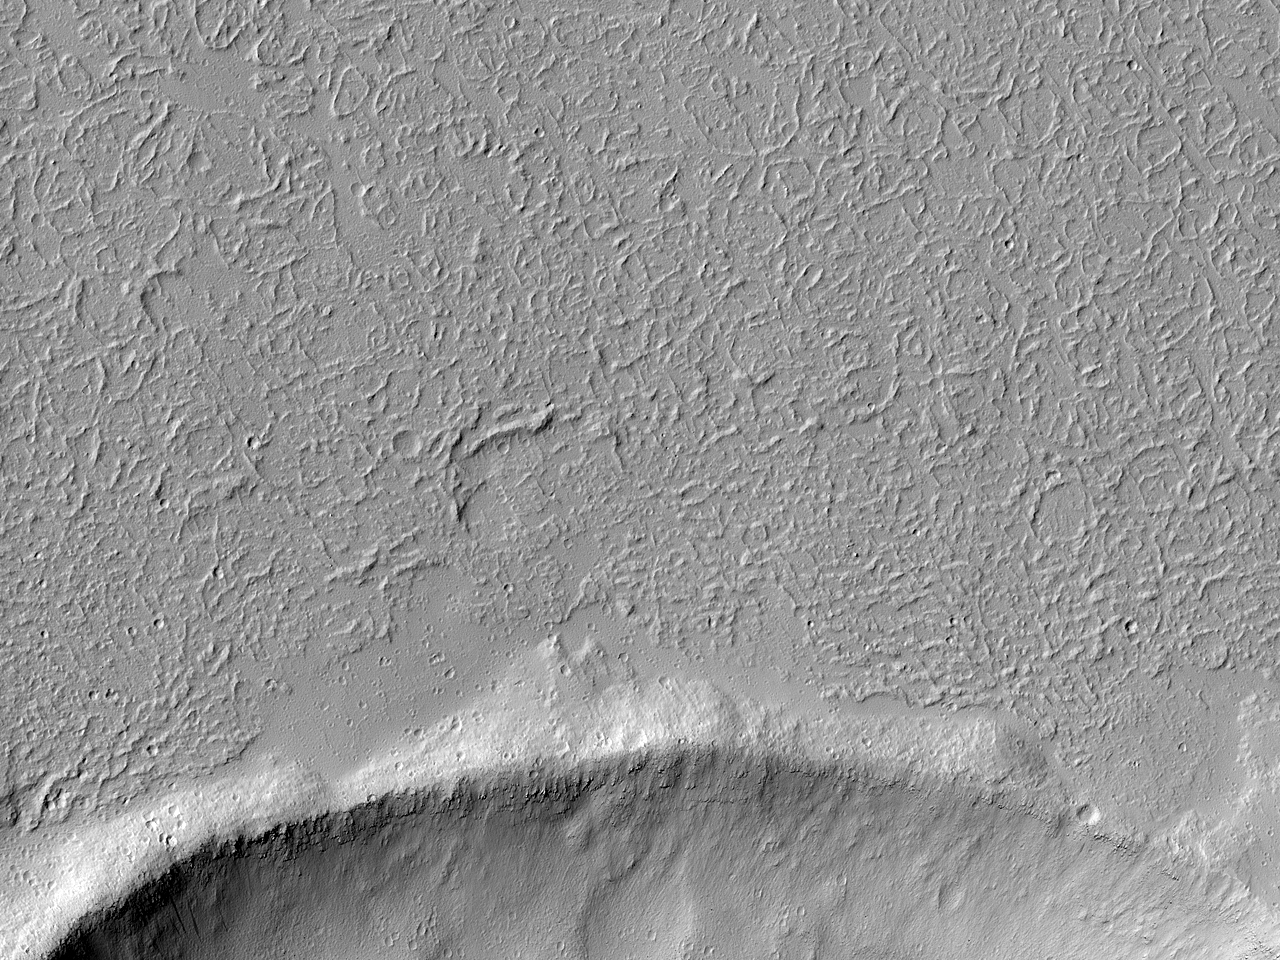 Κρατήρας περιβαλλόμενος από ροές σε περιοχή δυτικά του Χάσματος της Ηχούς (Echus Chasma)